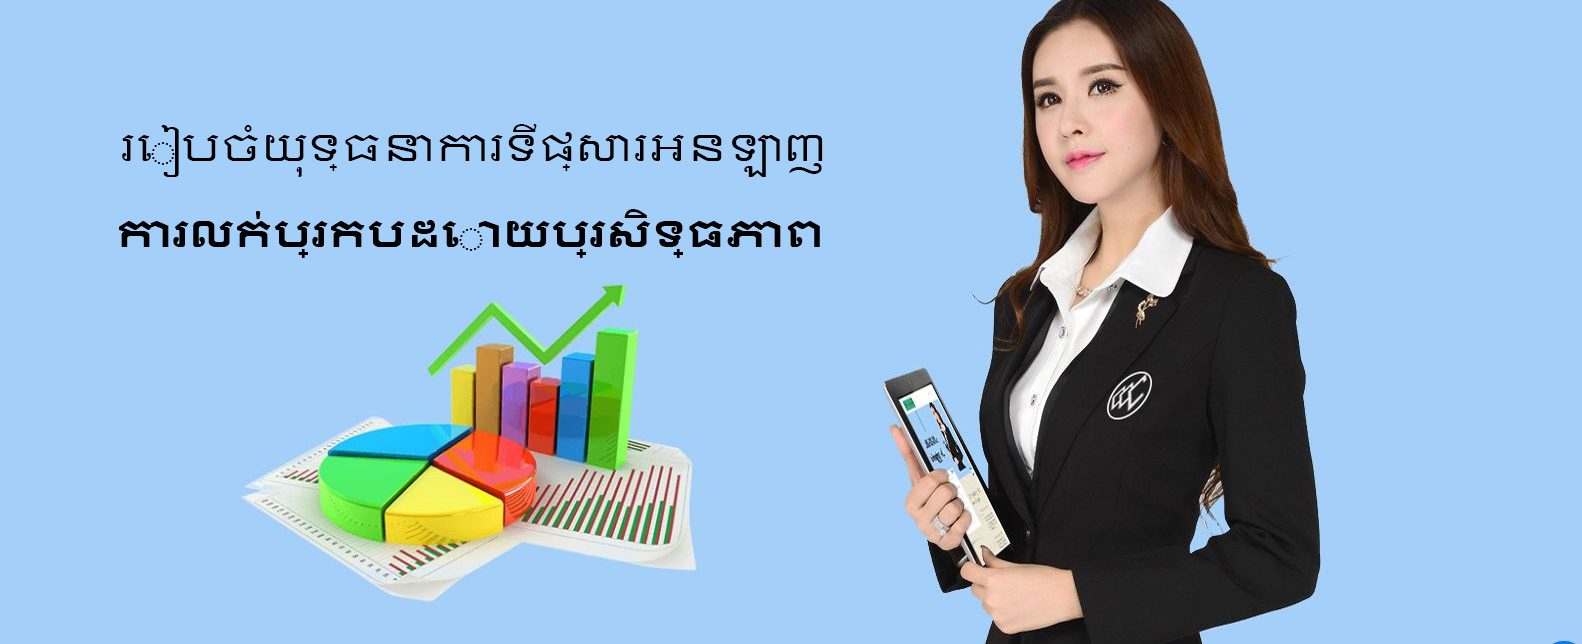 khmer-banner